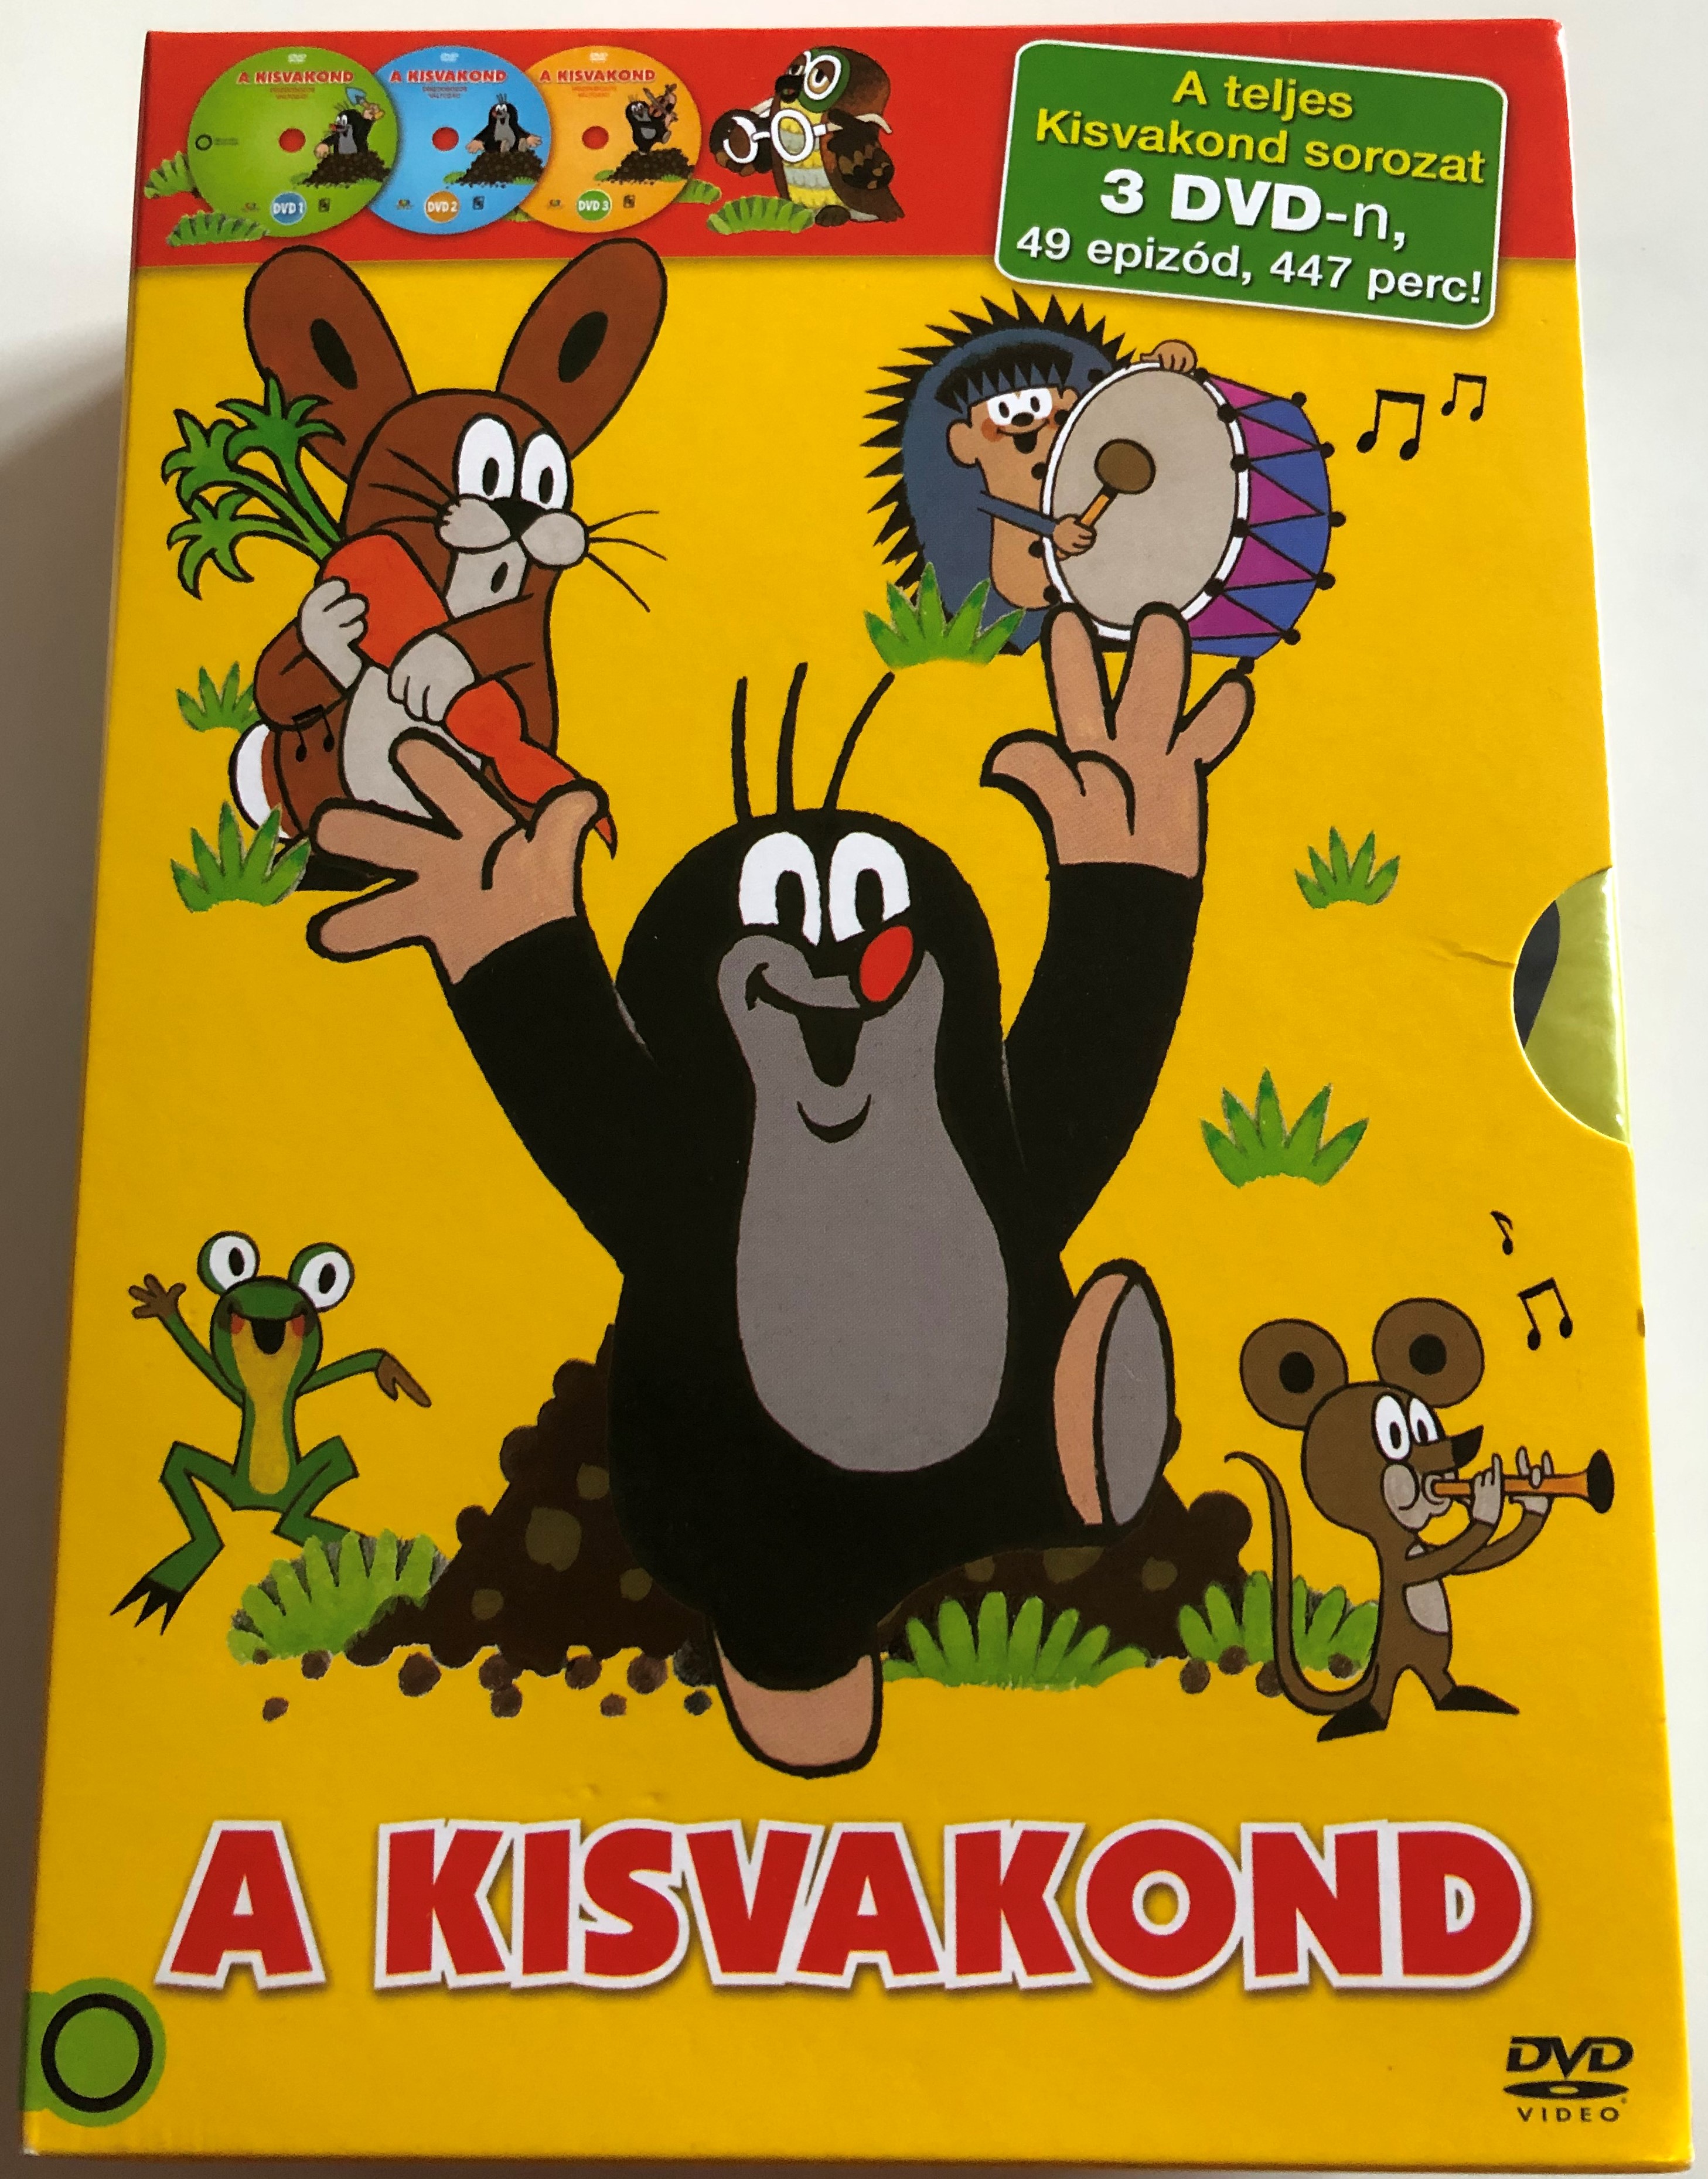 A kisvakond DVD full SET Krtek the Little Mole Full Series 1